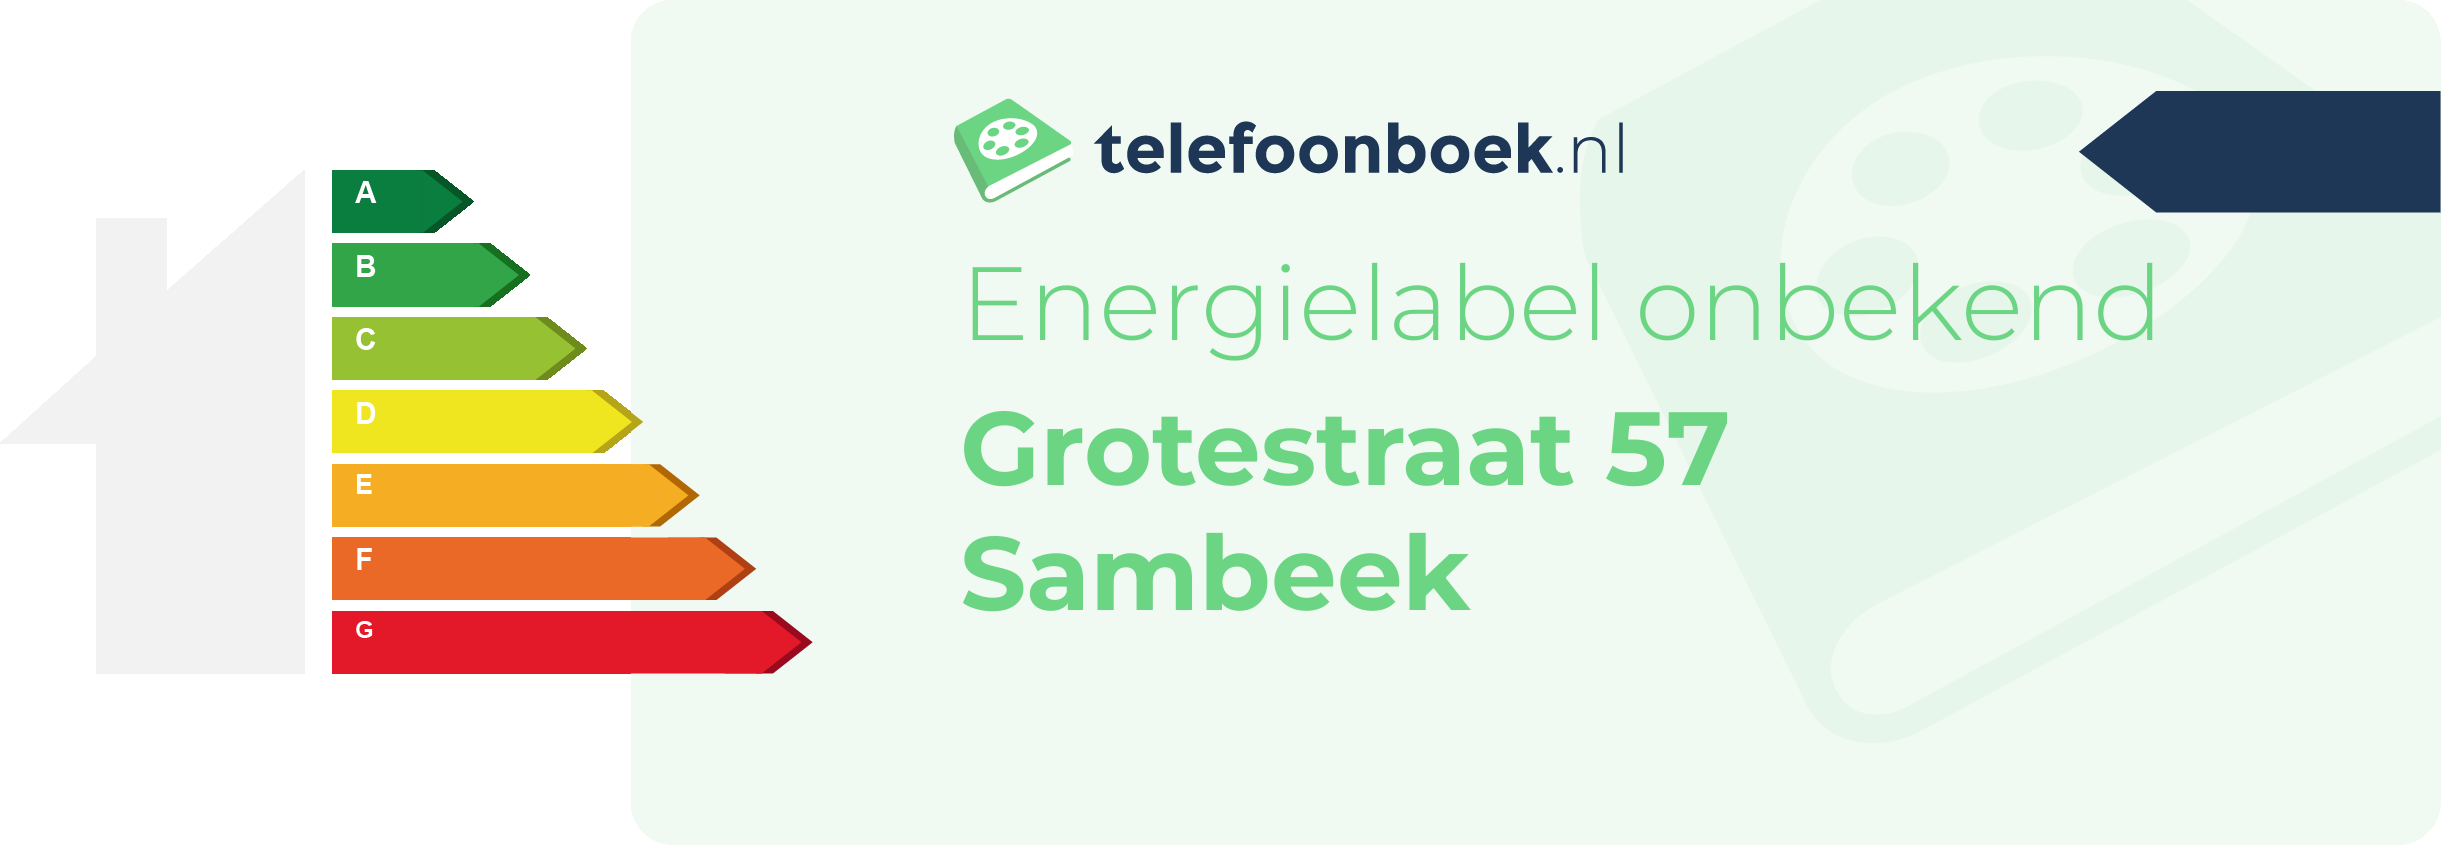 Energielabel Grotestraat 57 Sambeek